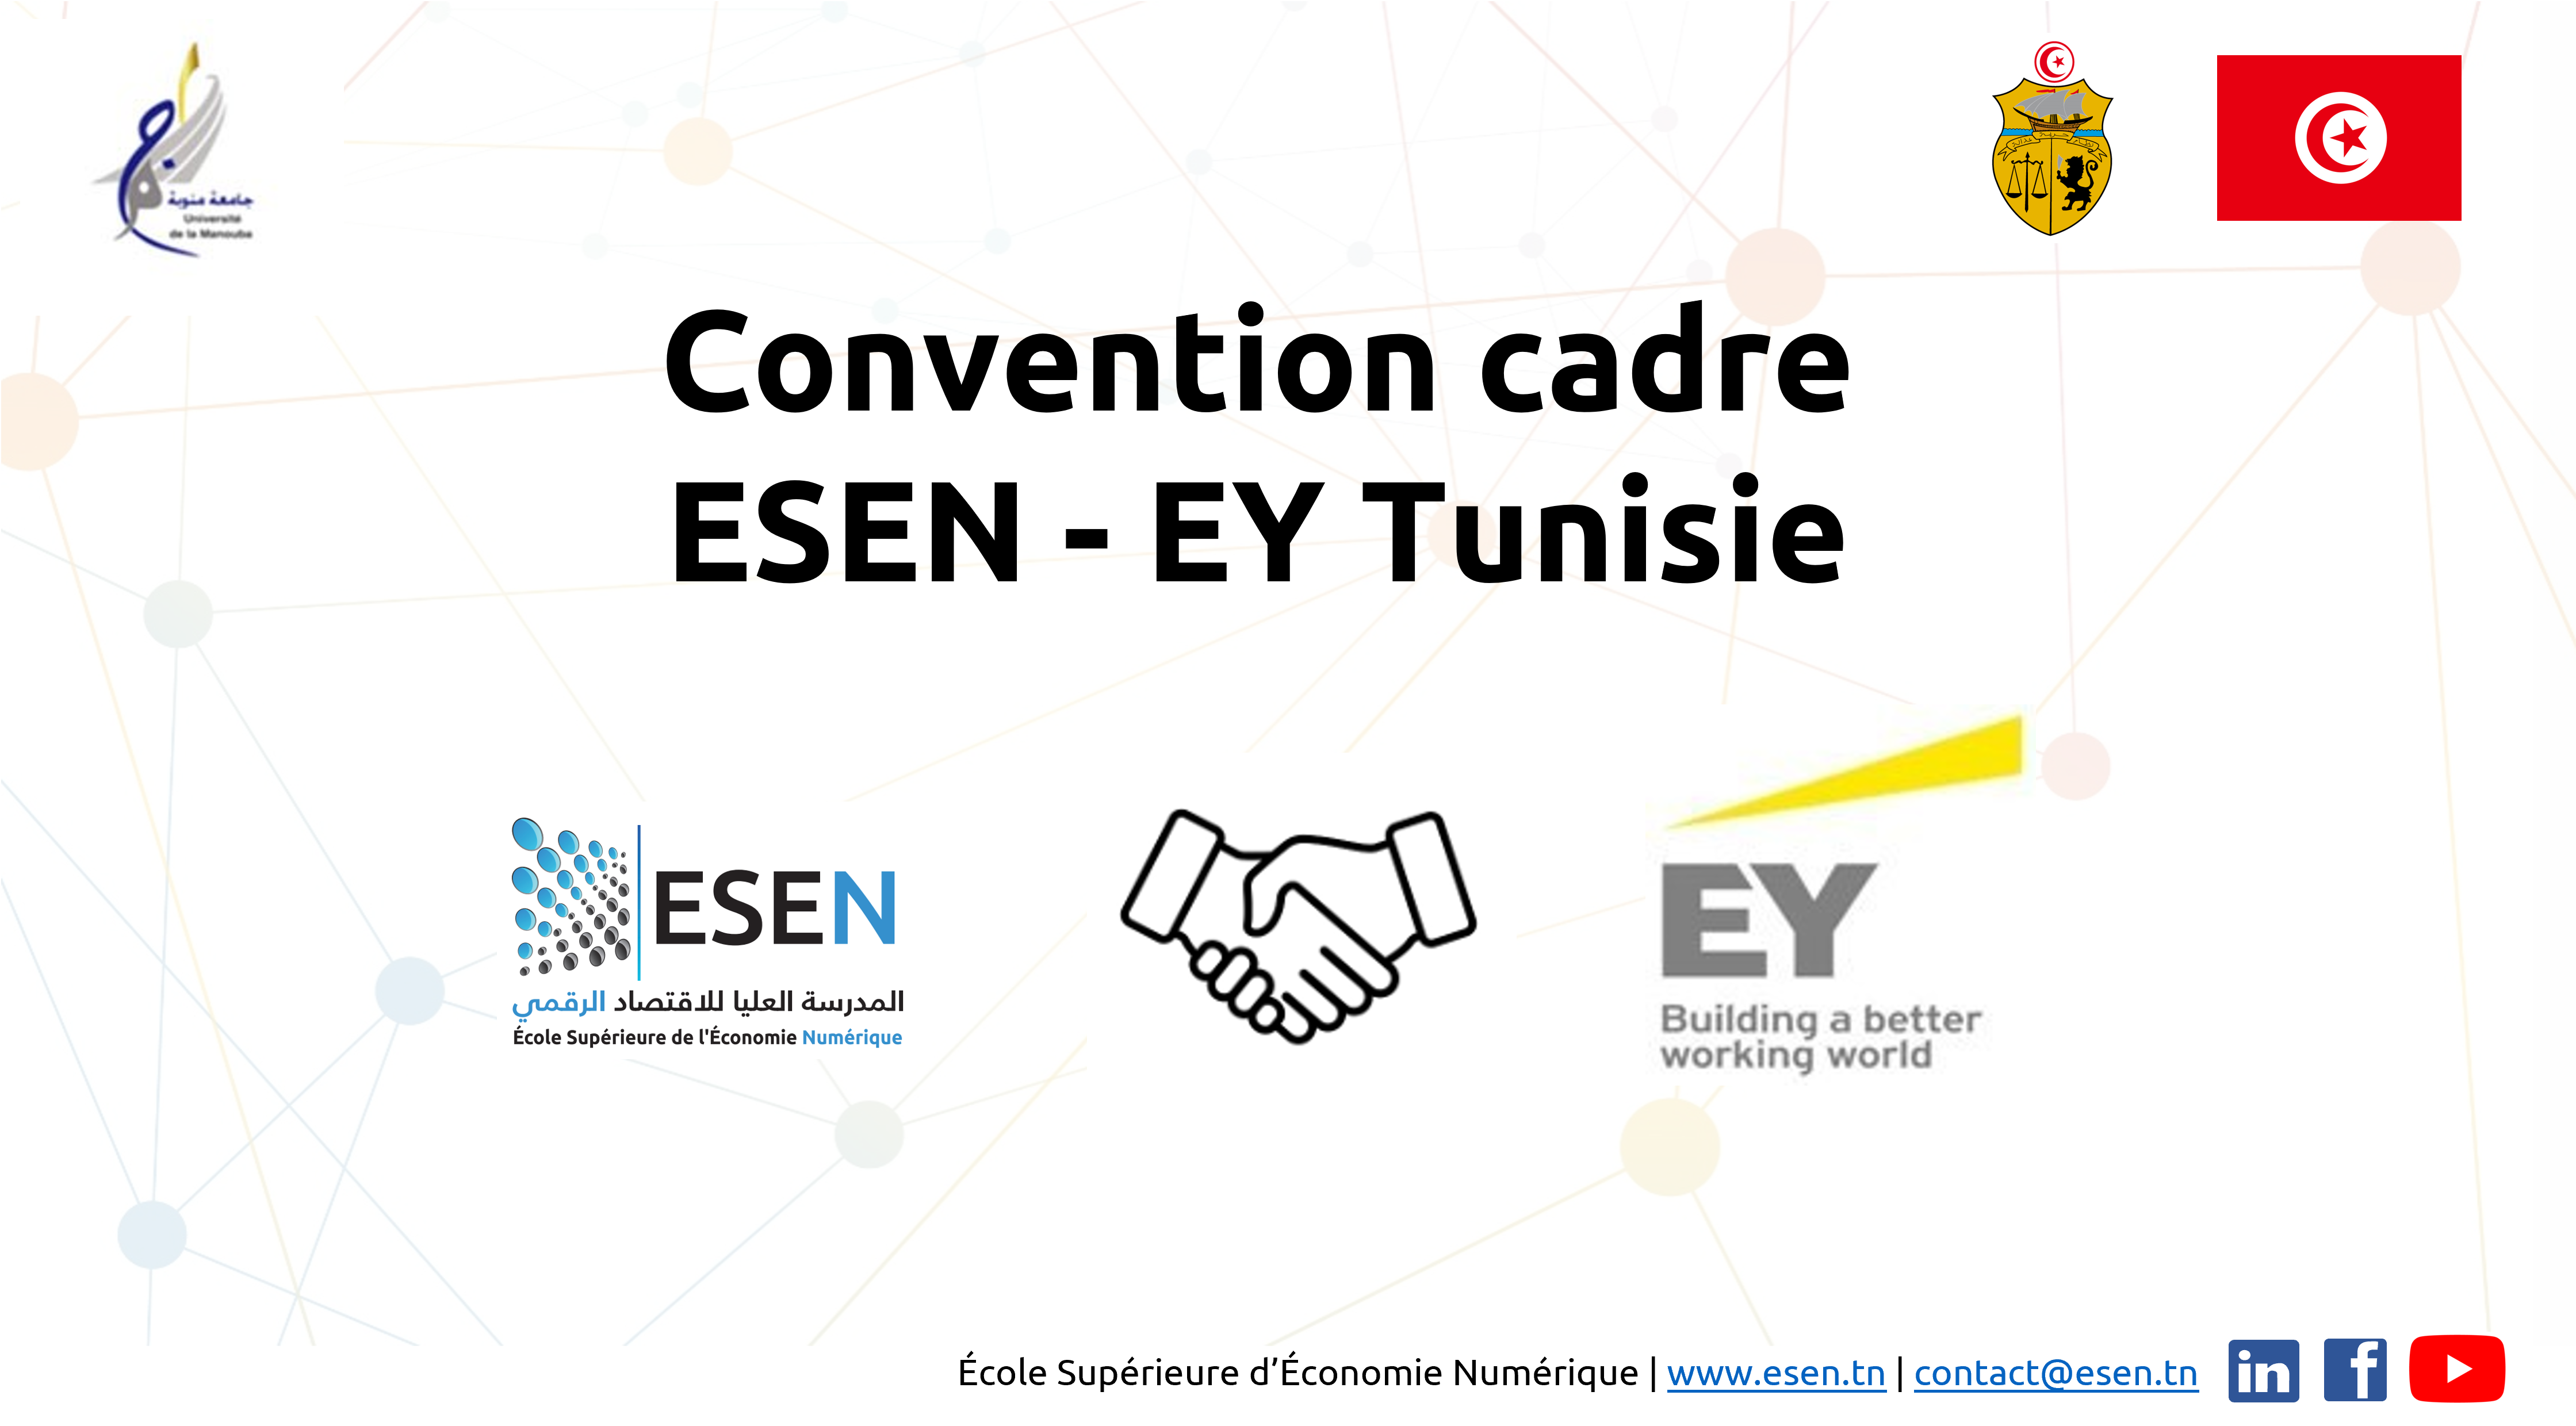 Convention cadre ESEN - EY Tunisie